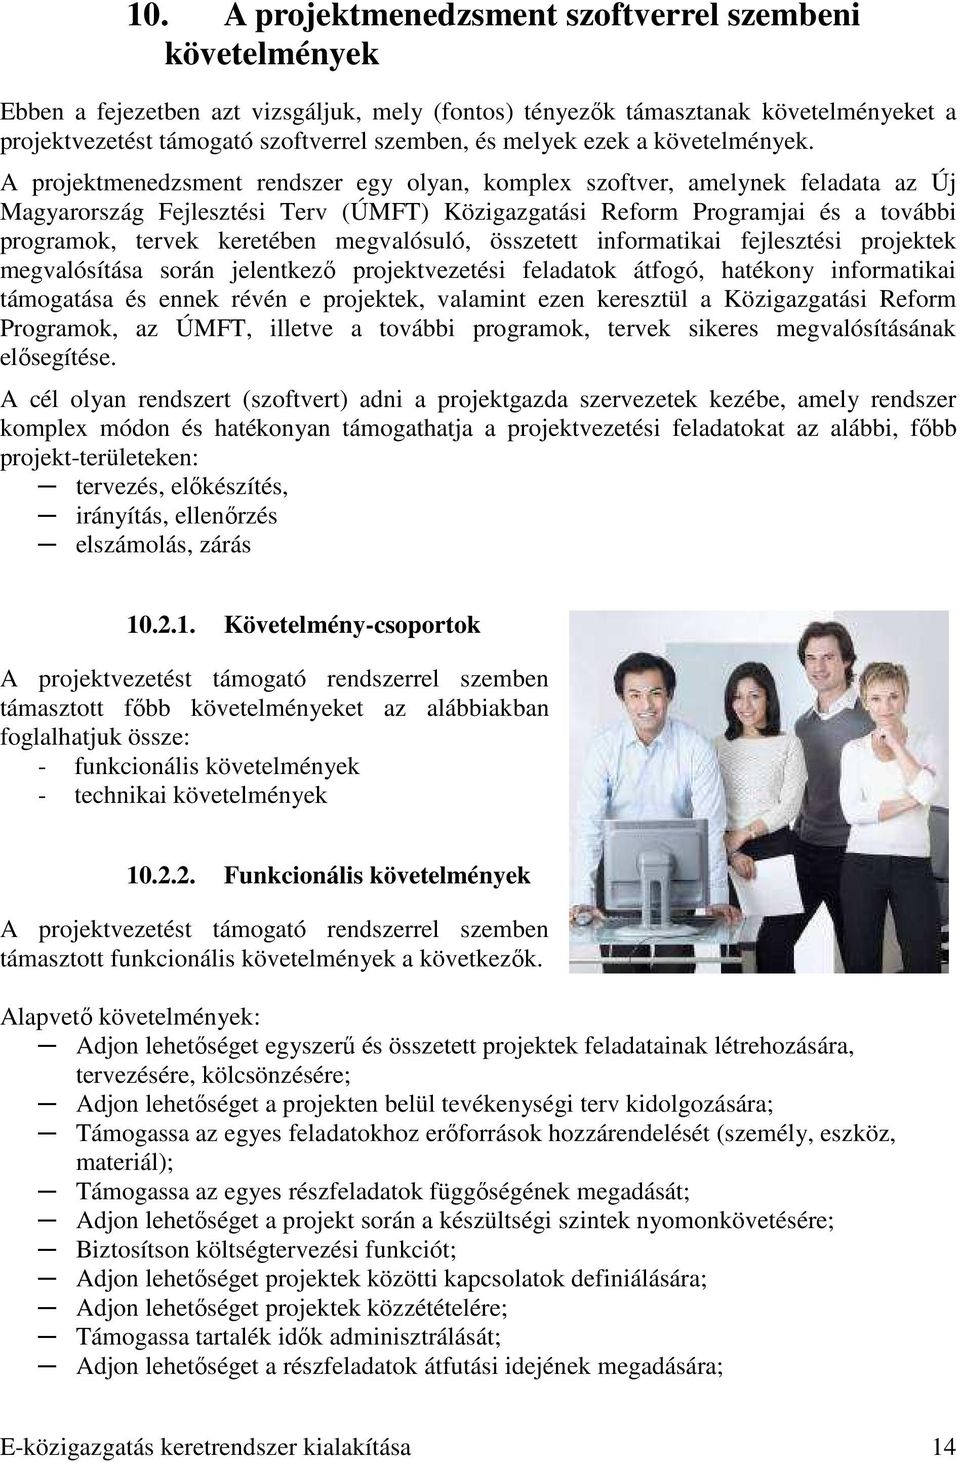 A projektmenedzsment rendszer egy olyan, komplex szoftver, amelynek feladata az Új Magyarország Fejlesztési Terv (ÚMFT) Közigazgatási Reform Programjai és a további programok, tervek keretében